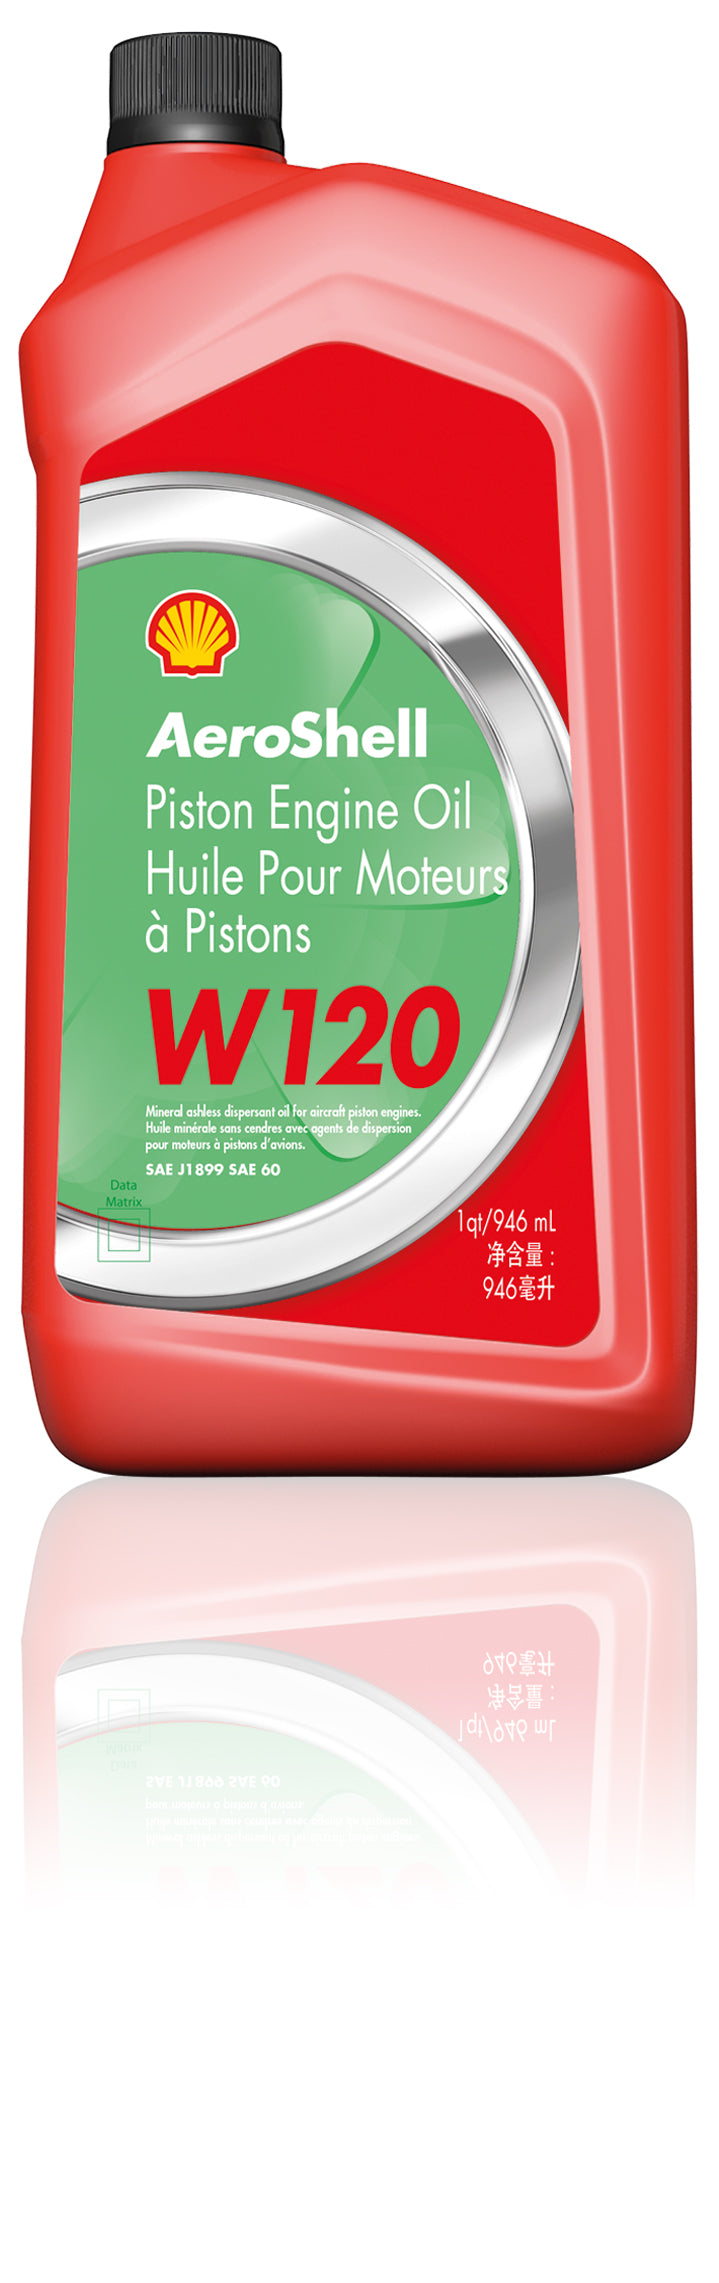 AeroShell W120 Piston Oil